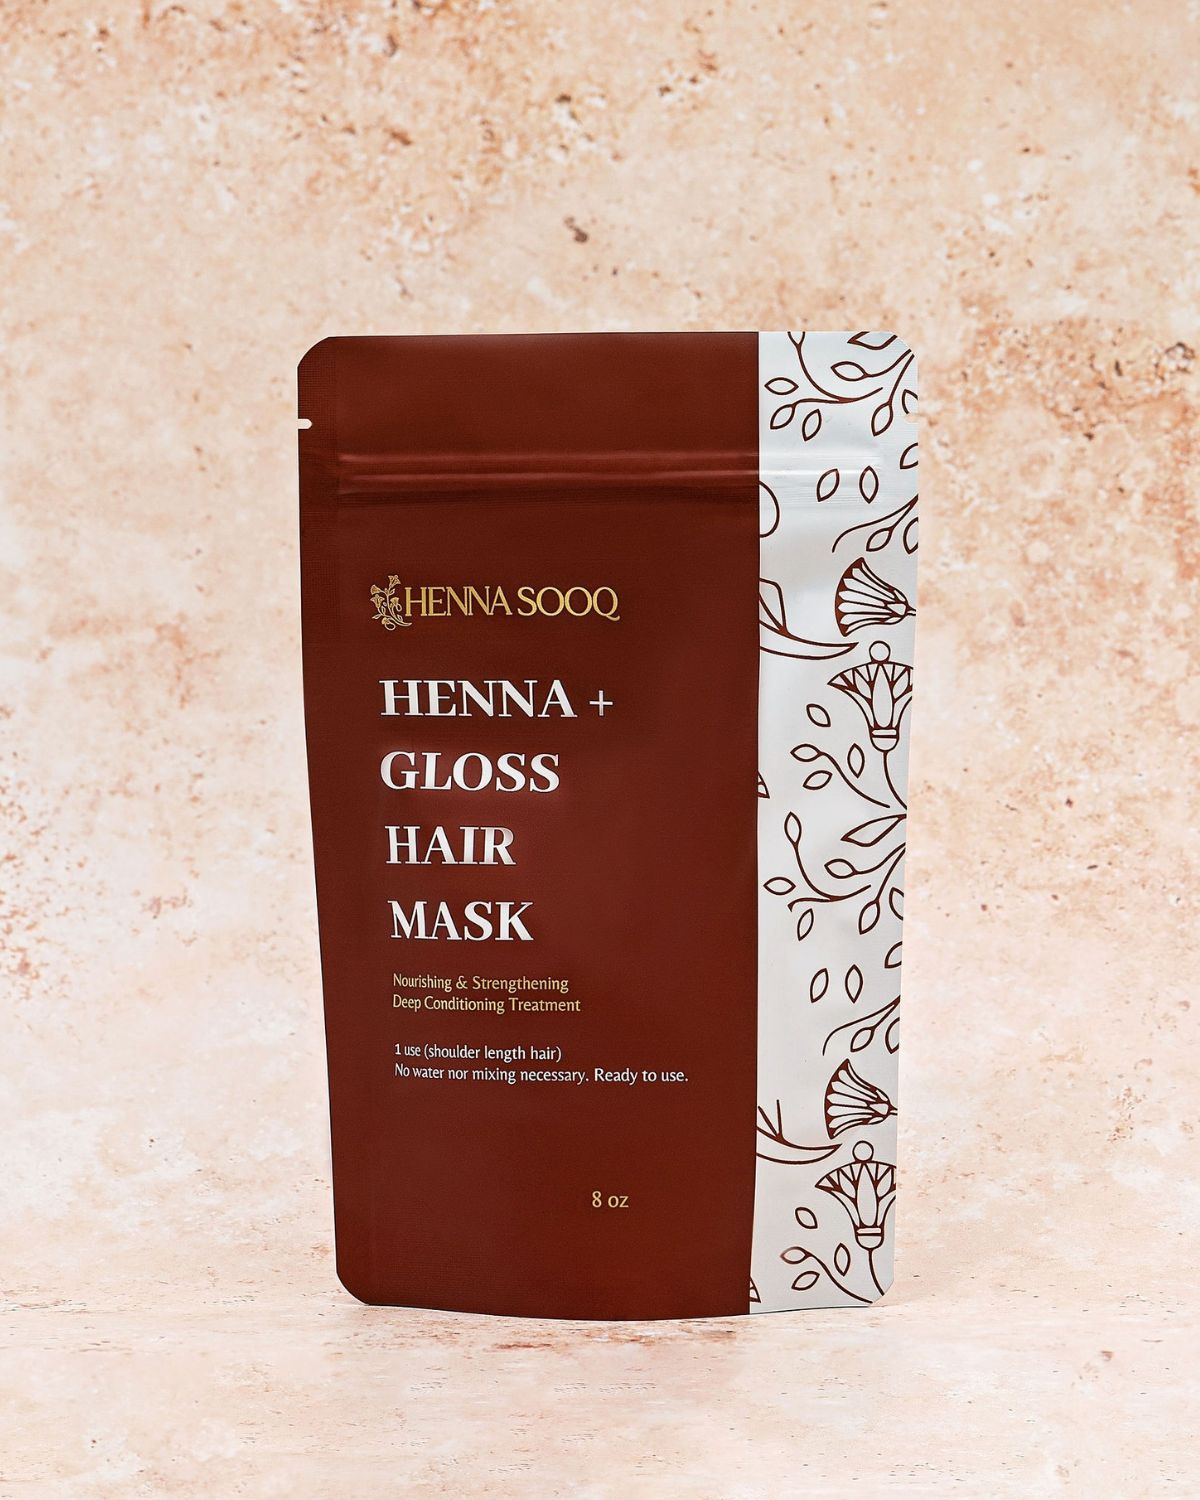 Henna + Gloss Hair Mask - Henna Sooq